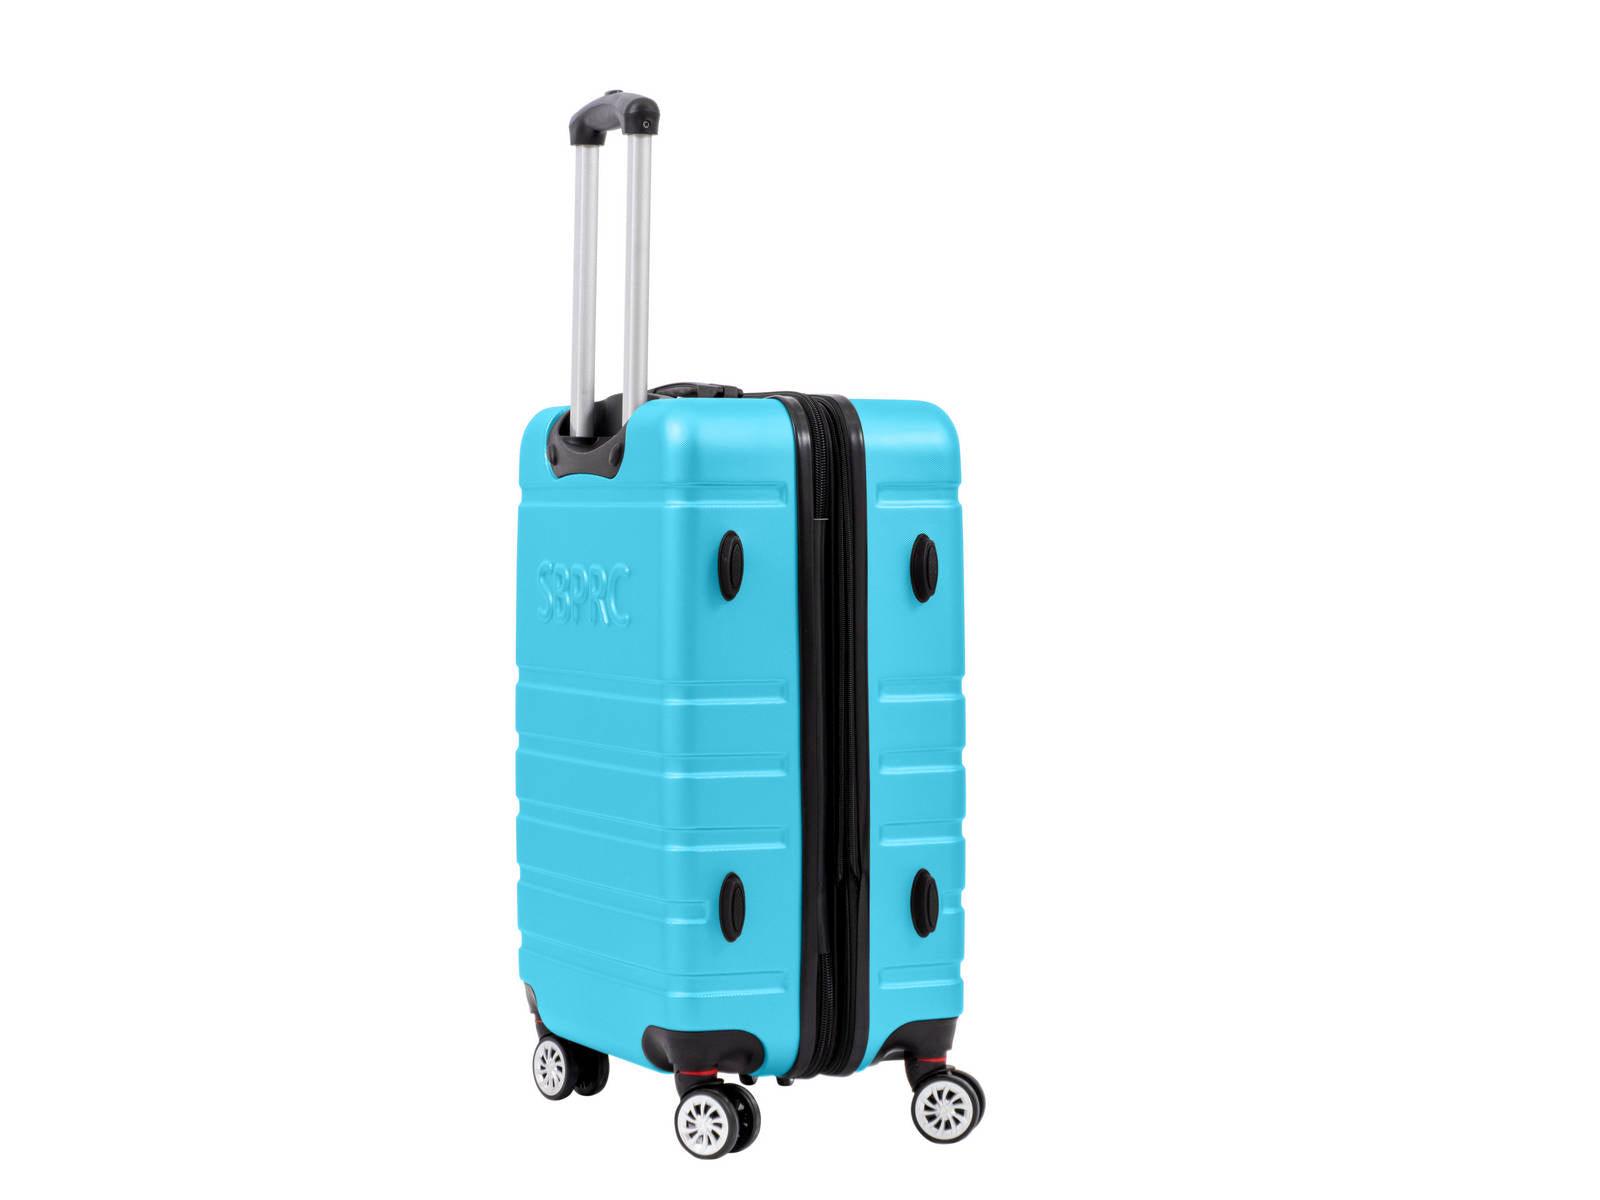 SANTA BARBARA POLO & RAQUET CLUB - מזוודה קשיחה בינונית 24" דגם 1807 בצבע תכלת - MASHBIR//365